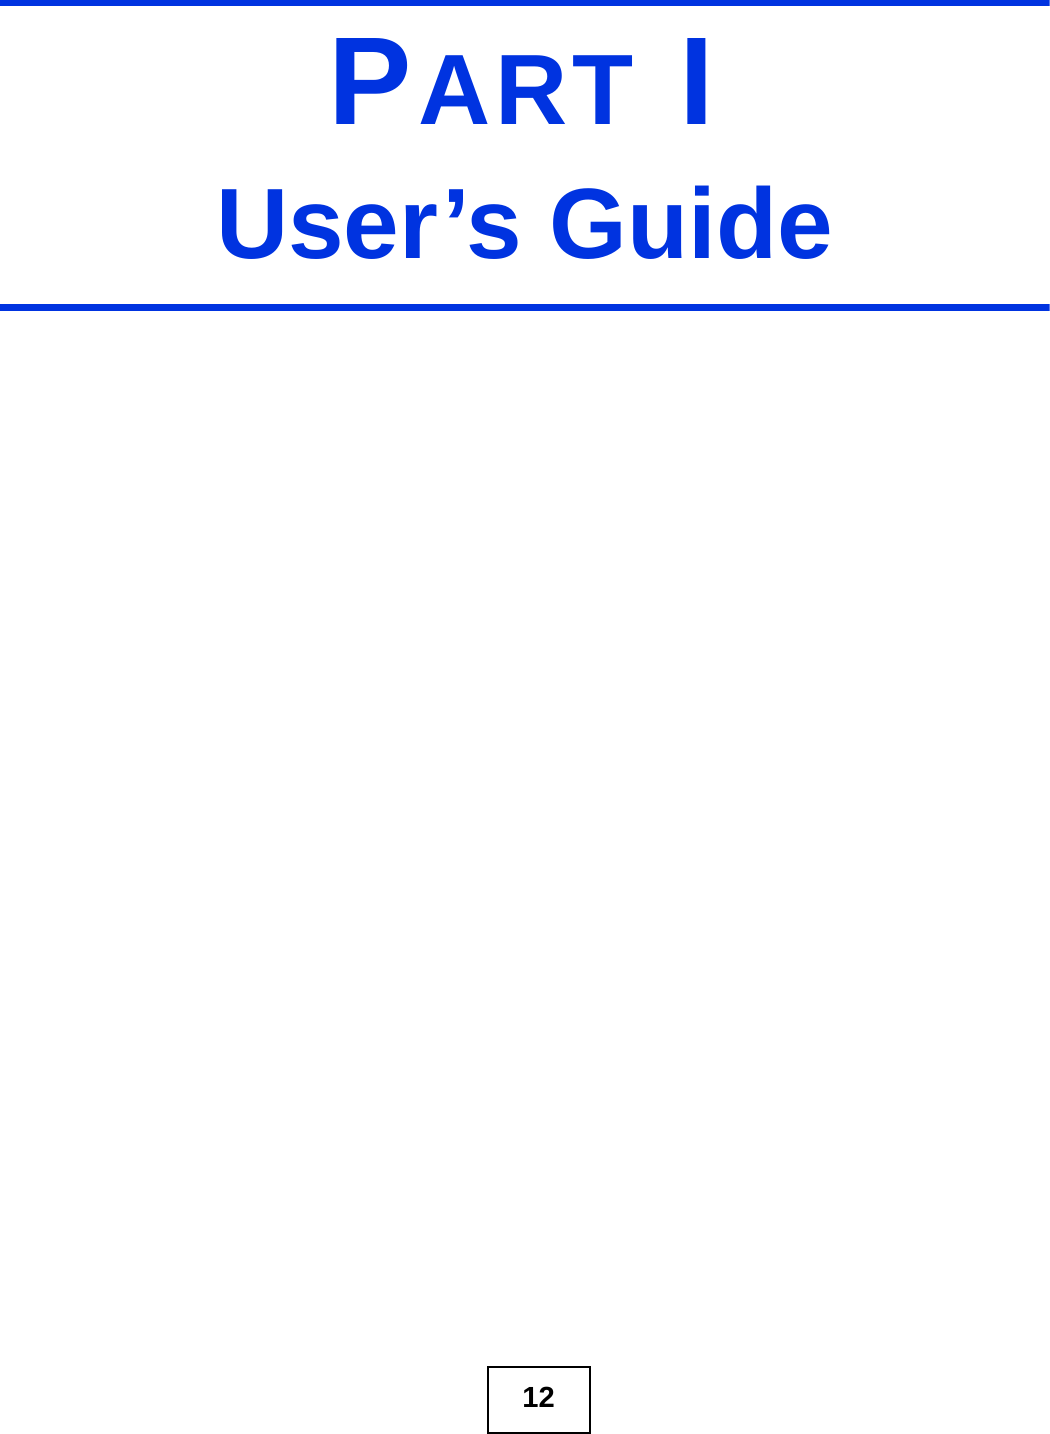 12PART IUser’s Guide 